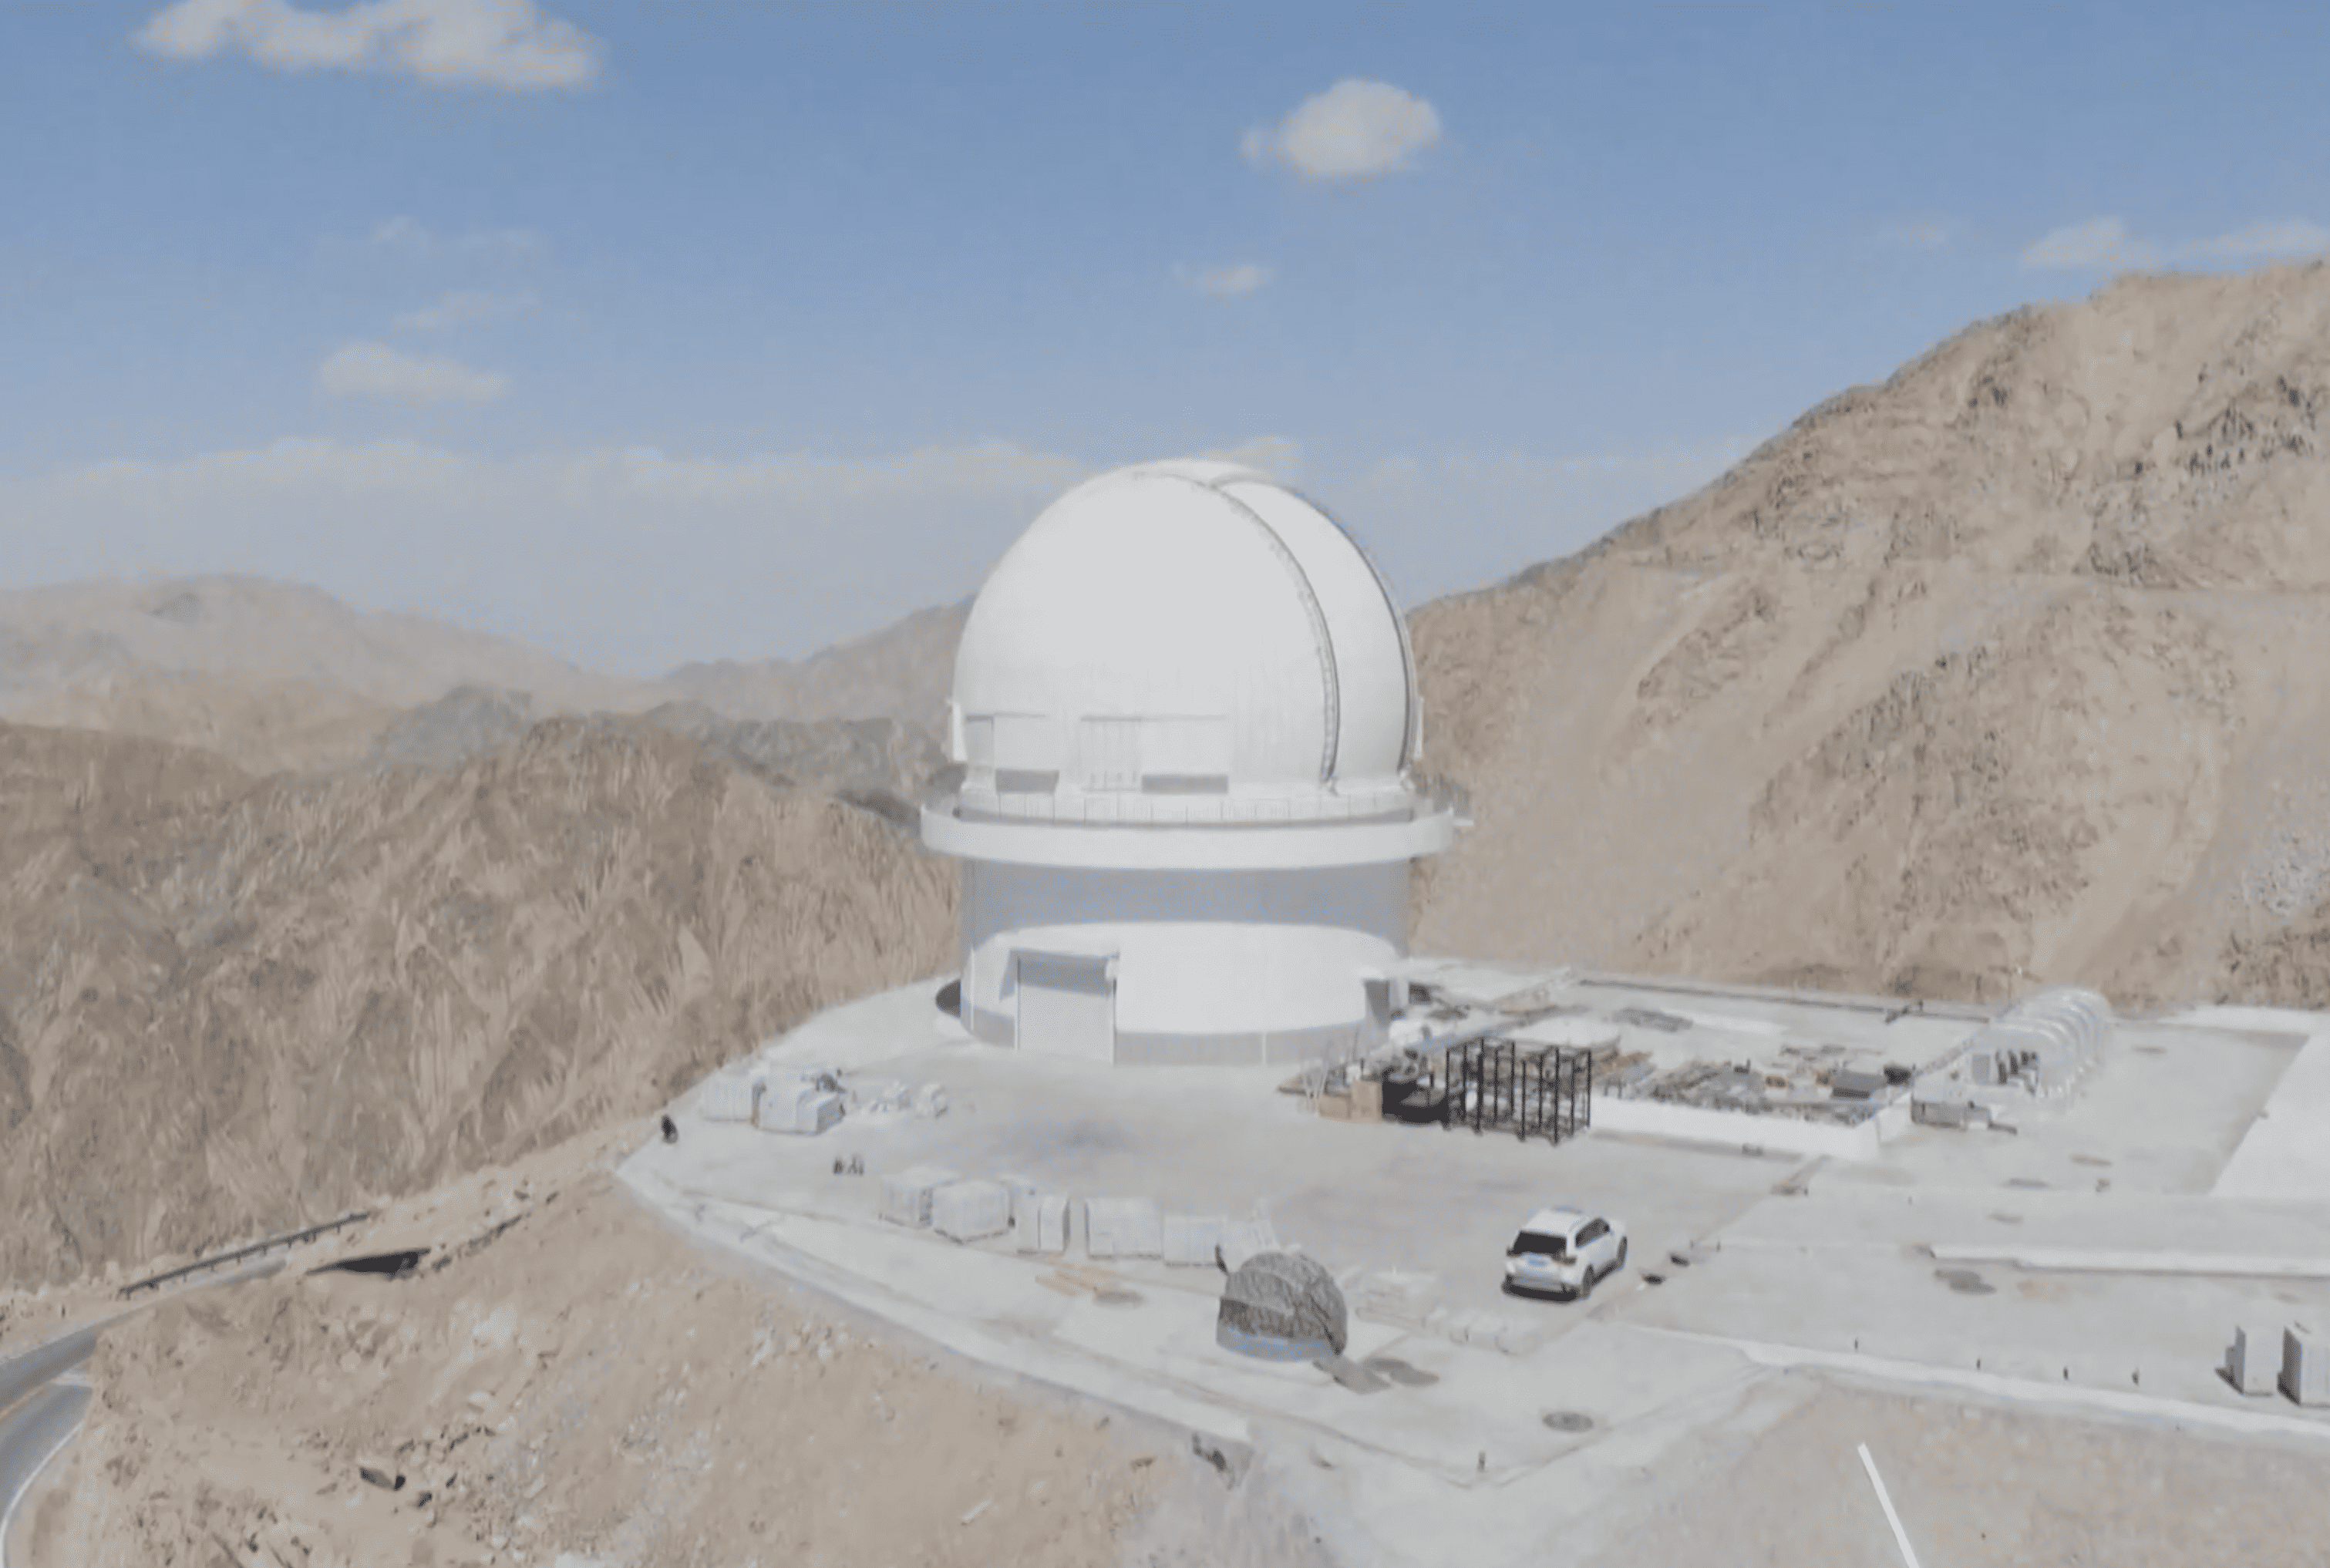 China inaugura mayor telescopio de campo amplio del hemisferio norte con Andrómeda